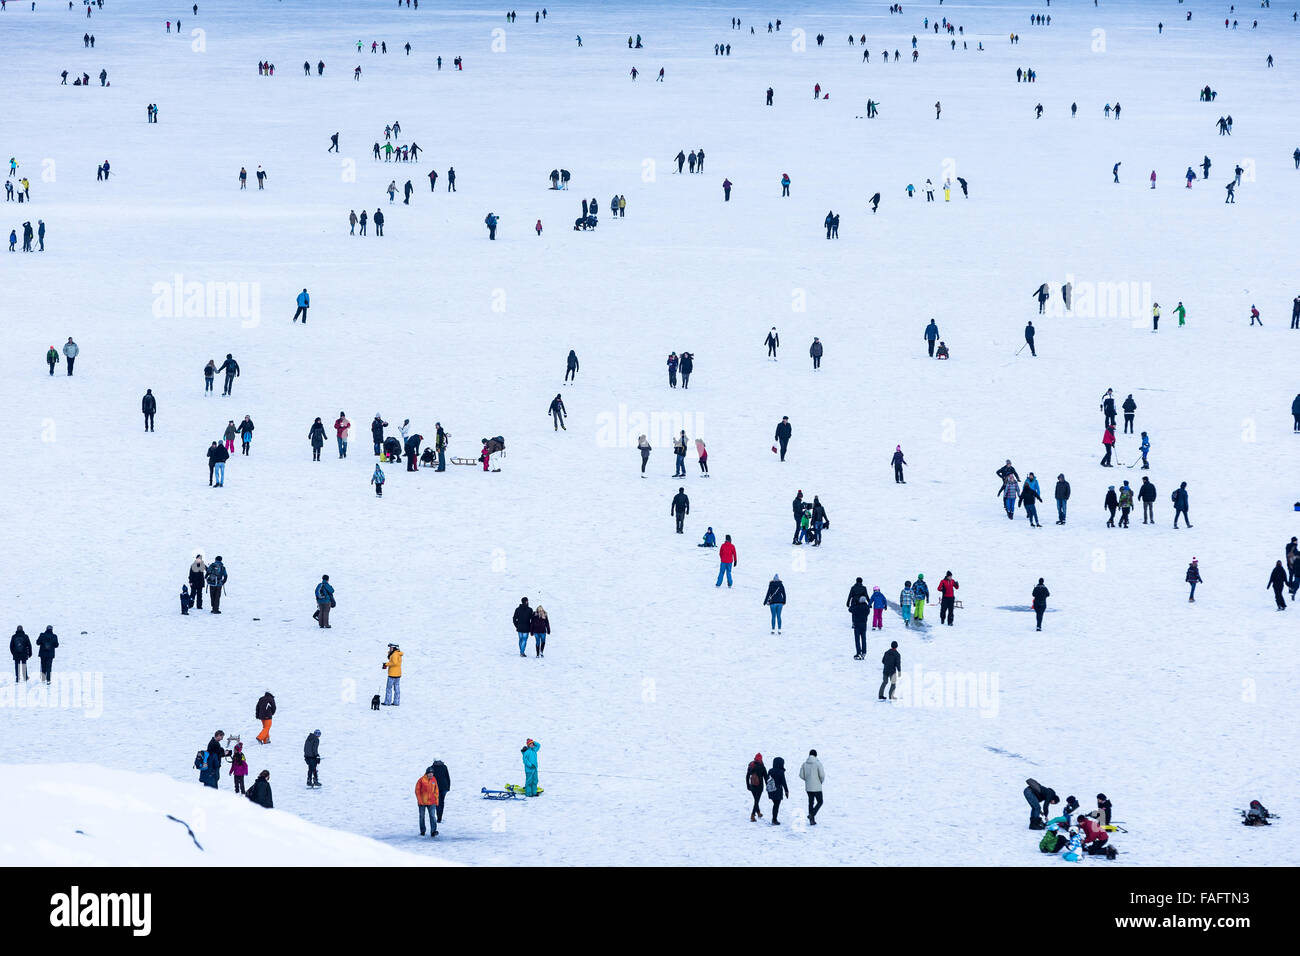 Kandersteg, Suiza. 29 de diciembre de 2015. Los patinadores sobre hielo y caminantes en el lago congelado Oeschinen 'Oeschinensee'. El lago es usualmente congelados durante cinco meses, de Diciembre a Mayo. Gracias a la falta de lluvias de este invierno, el hielo permanece alejado de la nieve, que también se llama 'Black ice' y es accesible para los patinadores sobre hielo y caminantes. Crédito: Dominic Steinmann/Alamy Live News Foto de stock